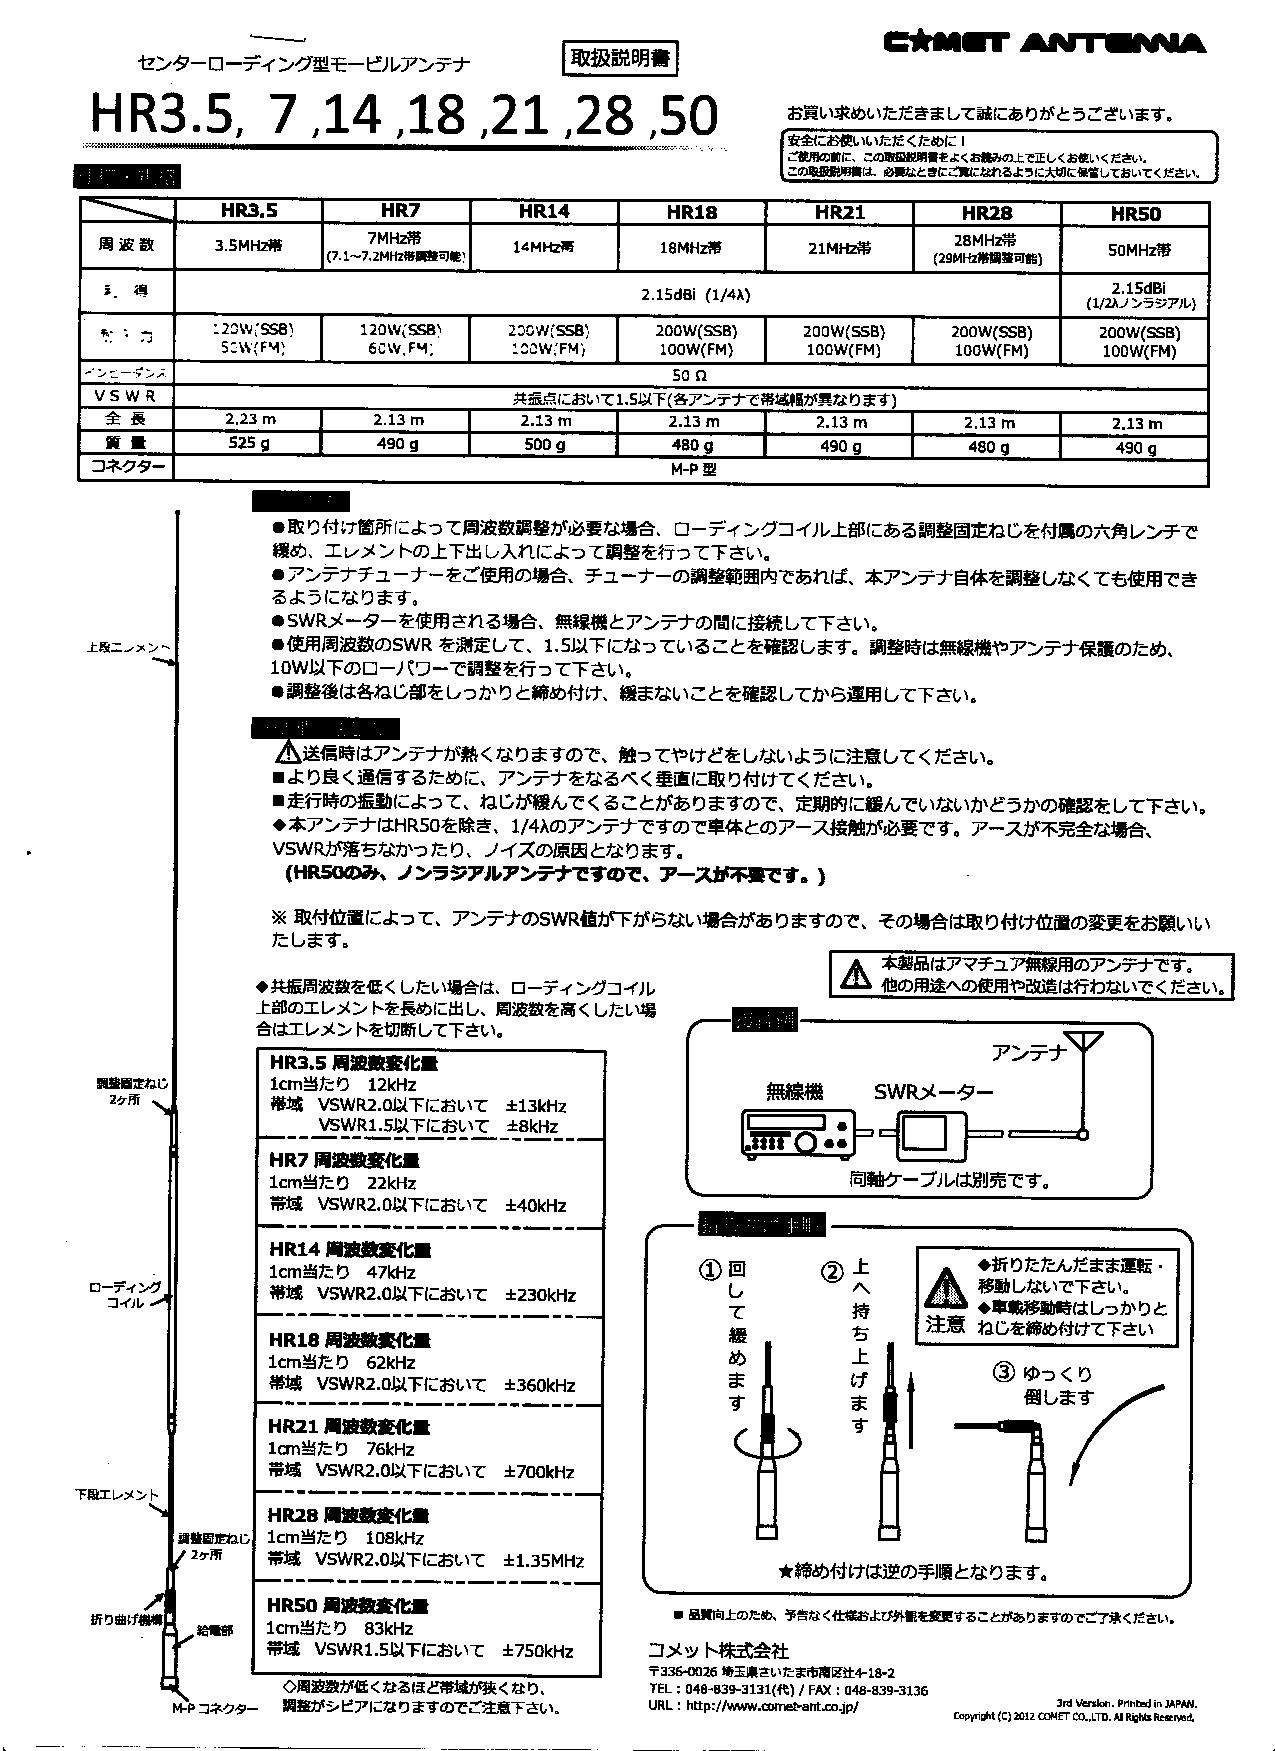 HR-28 (HR28) HF帯モノバンド 28MHz HRタイプ【2.13m】【特別ステージ 